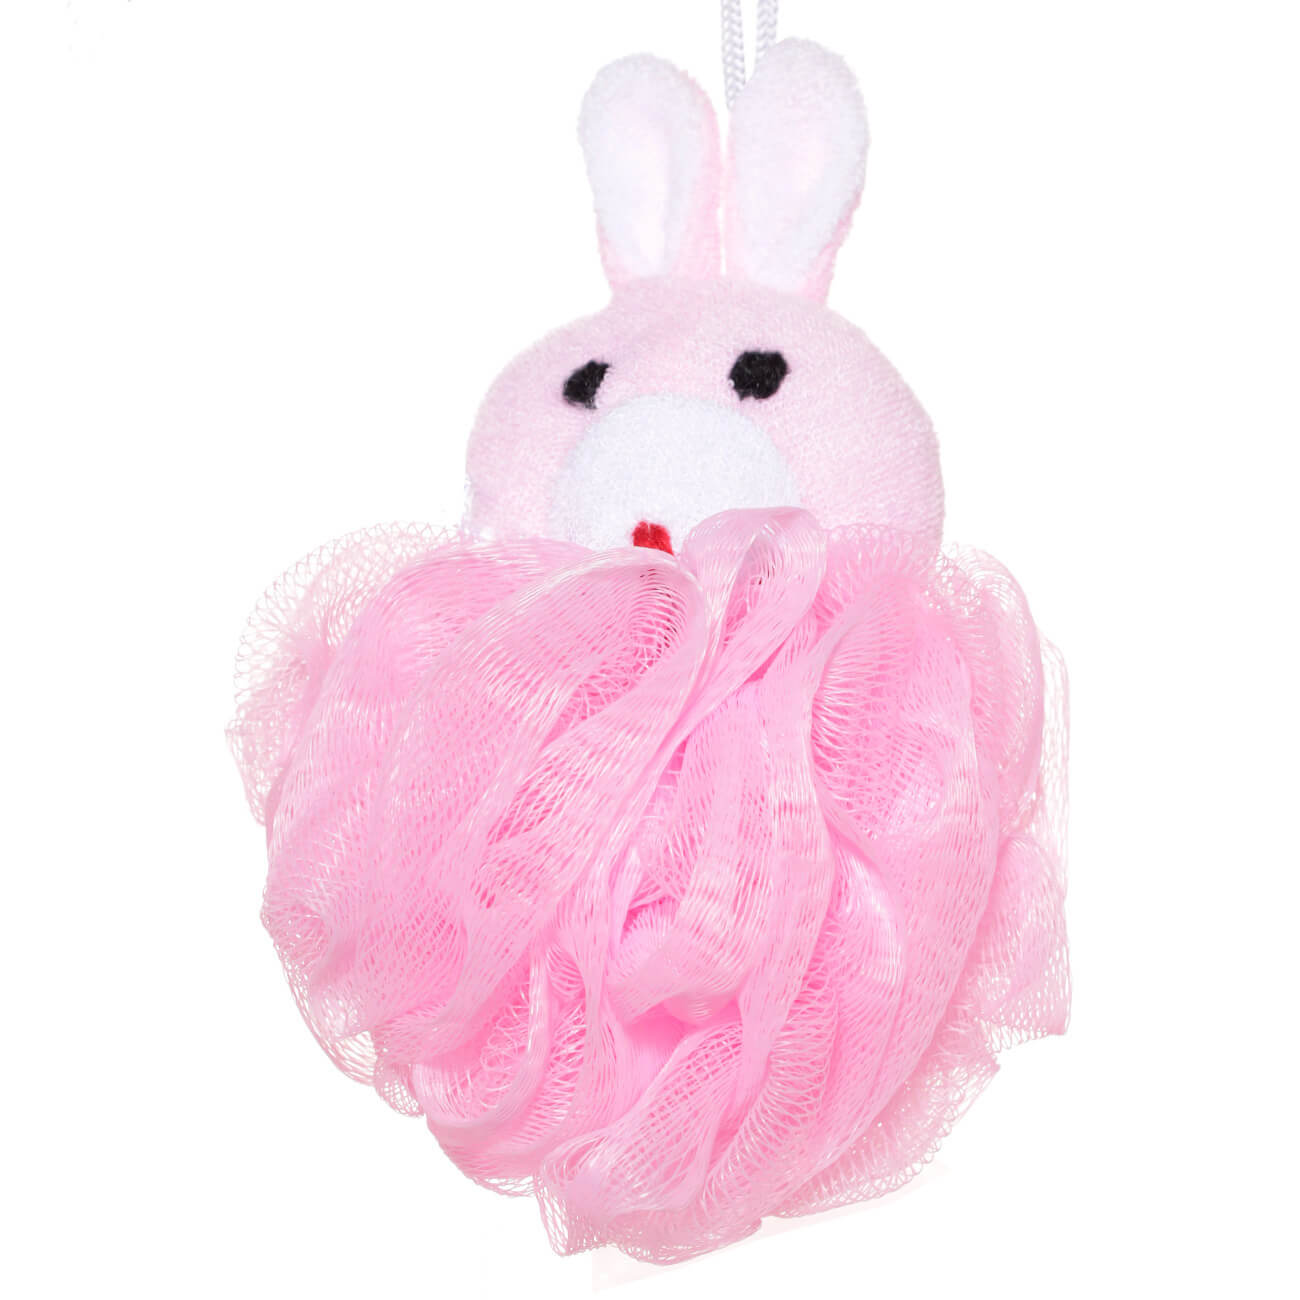 Мочалка для мытья тела, 12 см, детская, полиэтилен/полиэстер, розовая, Заяц, Rabbit жен кофта коррекция тела р 46 48